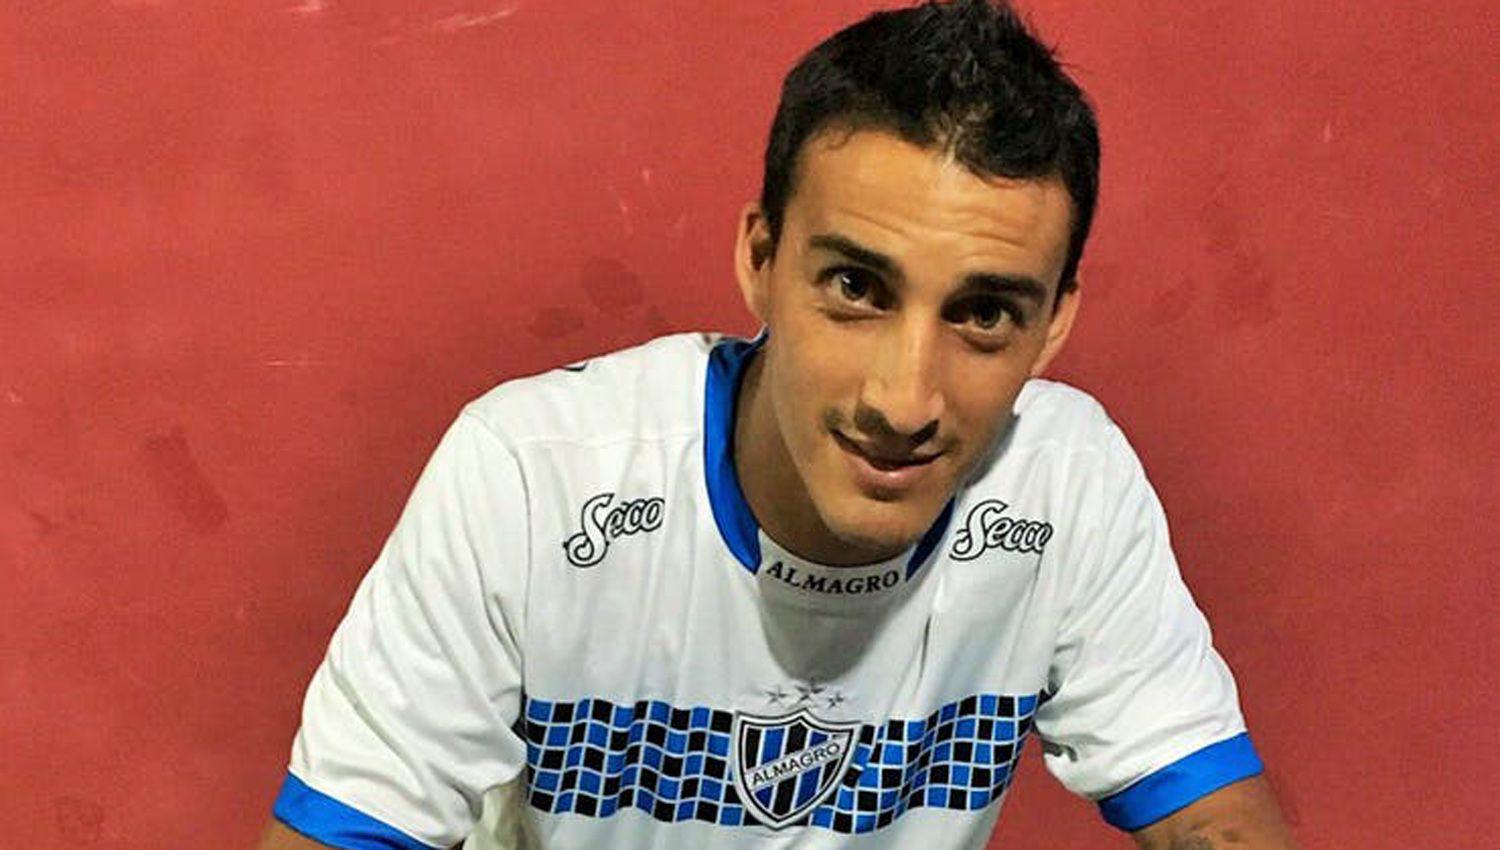 La familia del ex futbolista pide ayuda a través de las redes sociales para encontrarlo